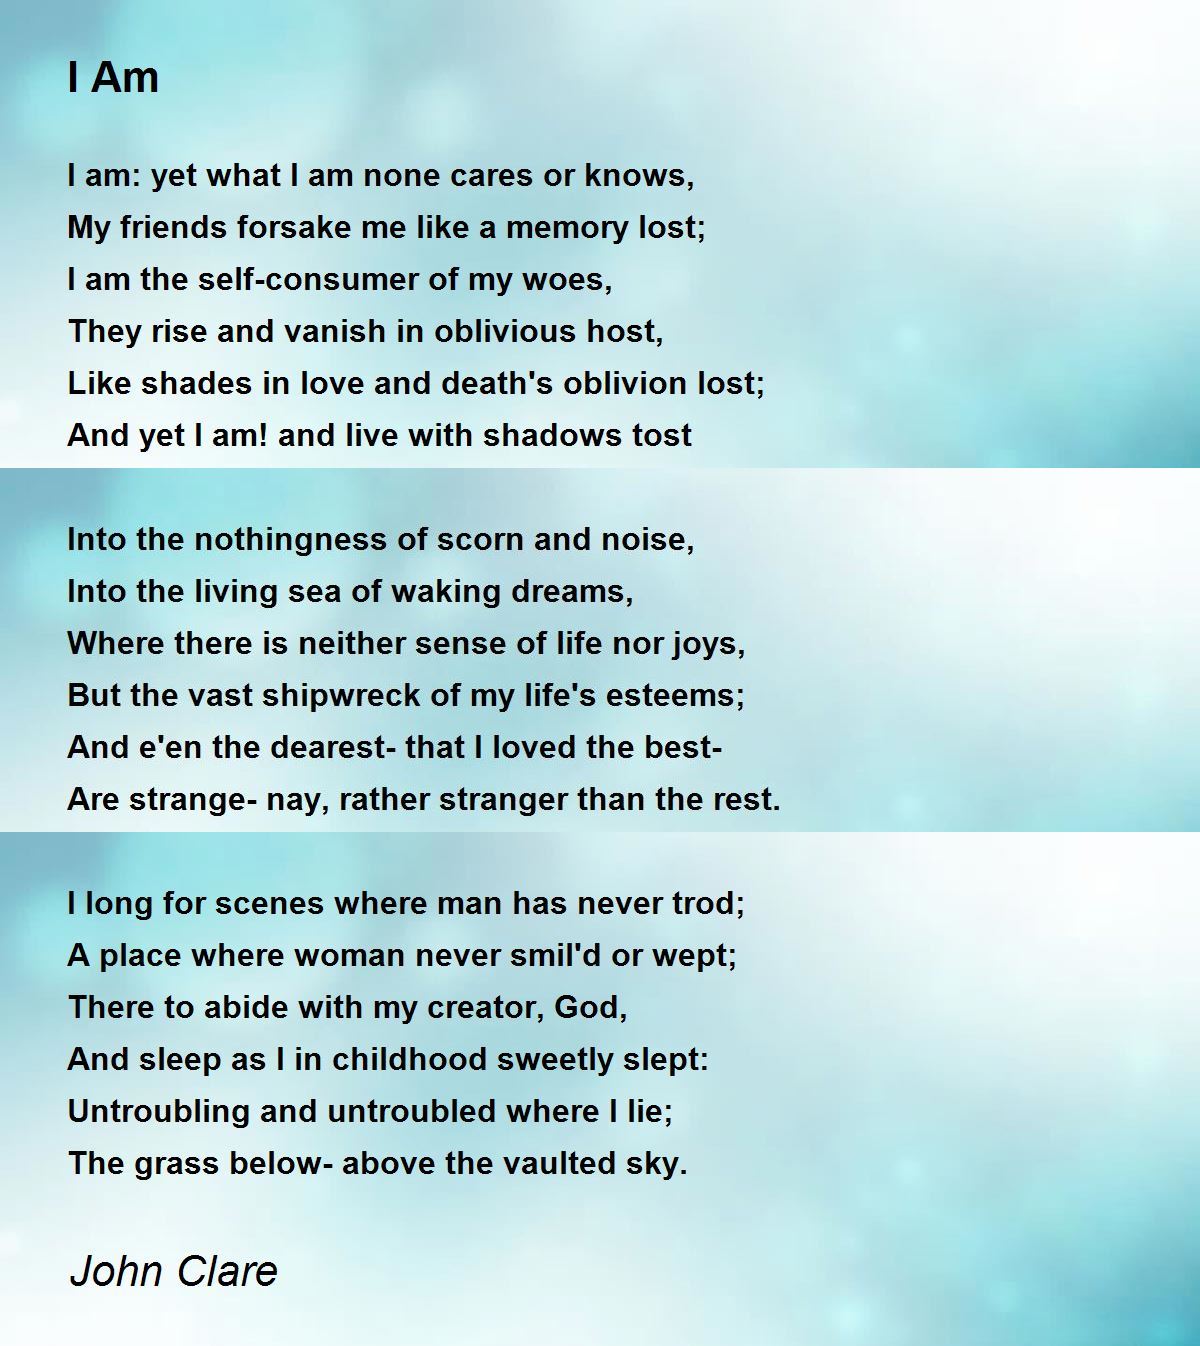 I Am - I Am Poem by John Clare